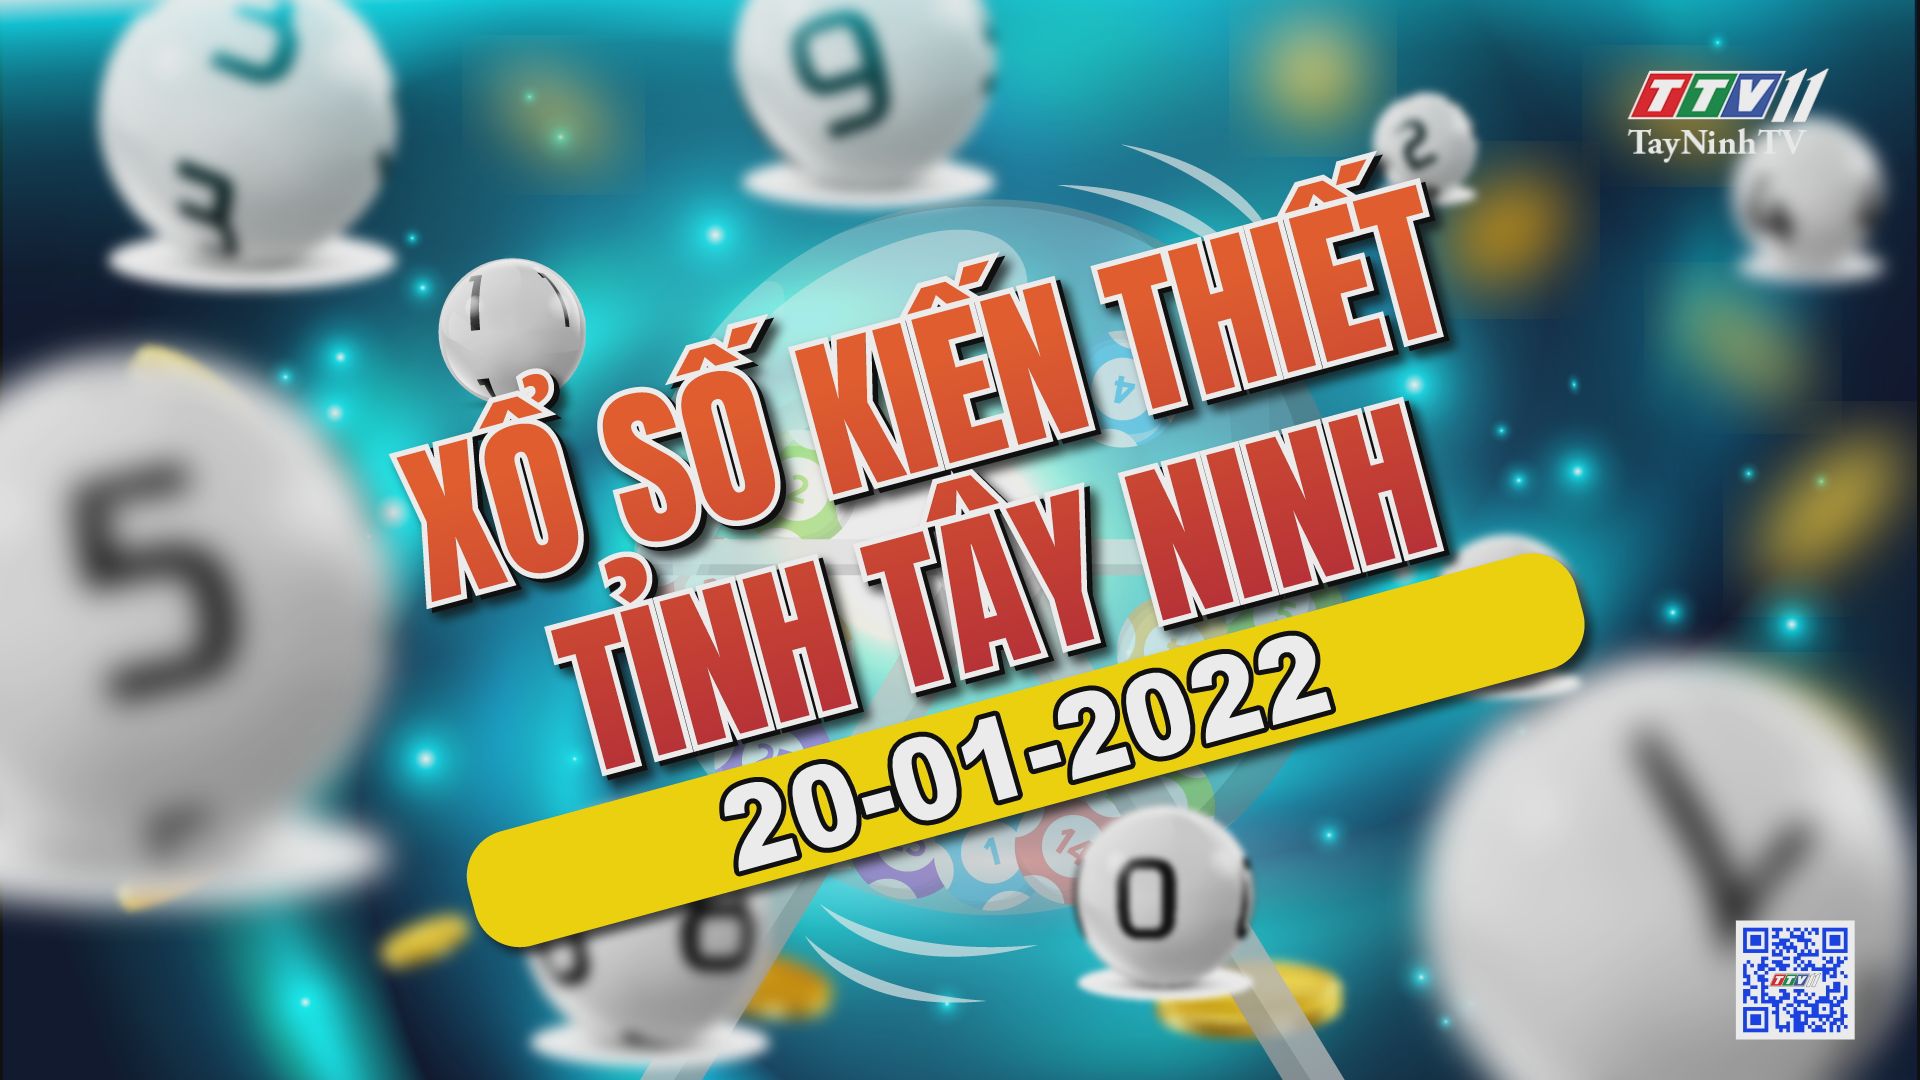 Trực tiếp Xổ số Tây Ninh ngày 20-01-2022 | TayNinhTVAudio